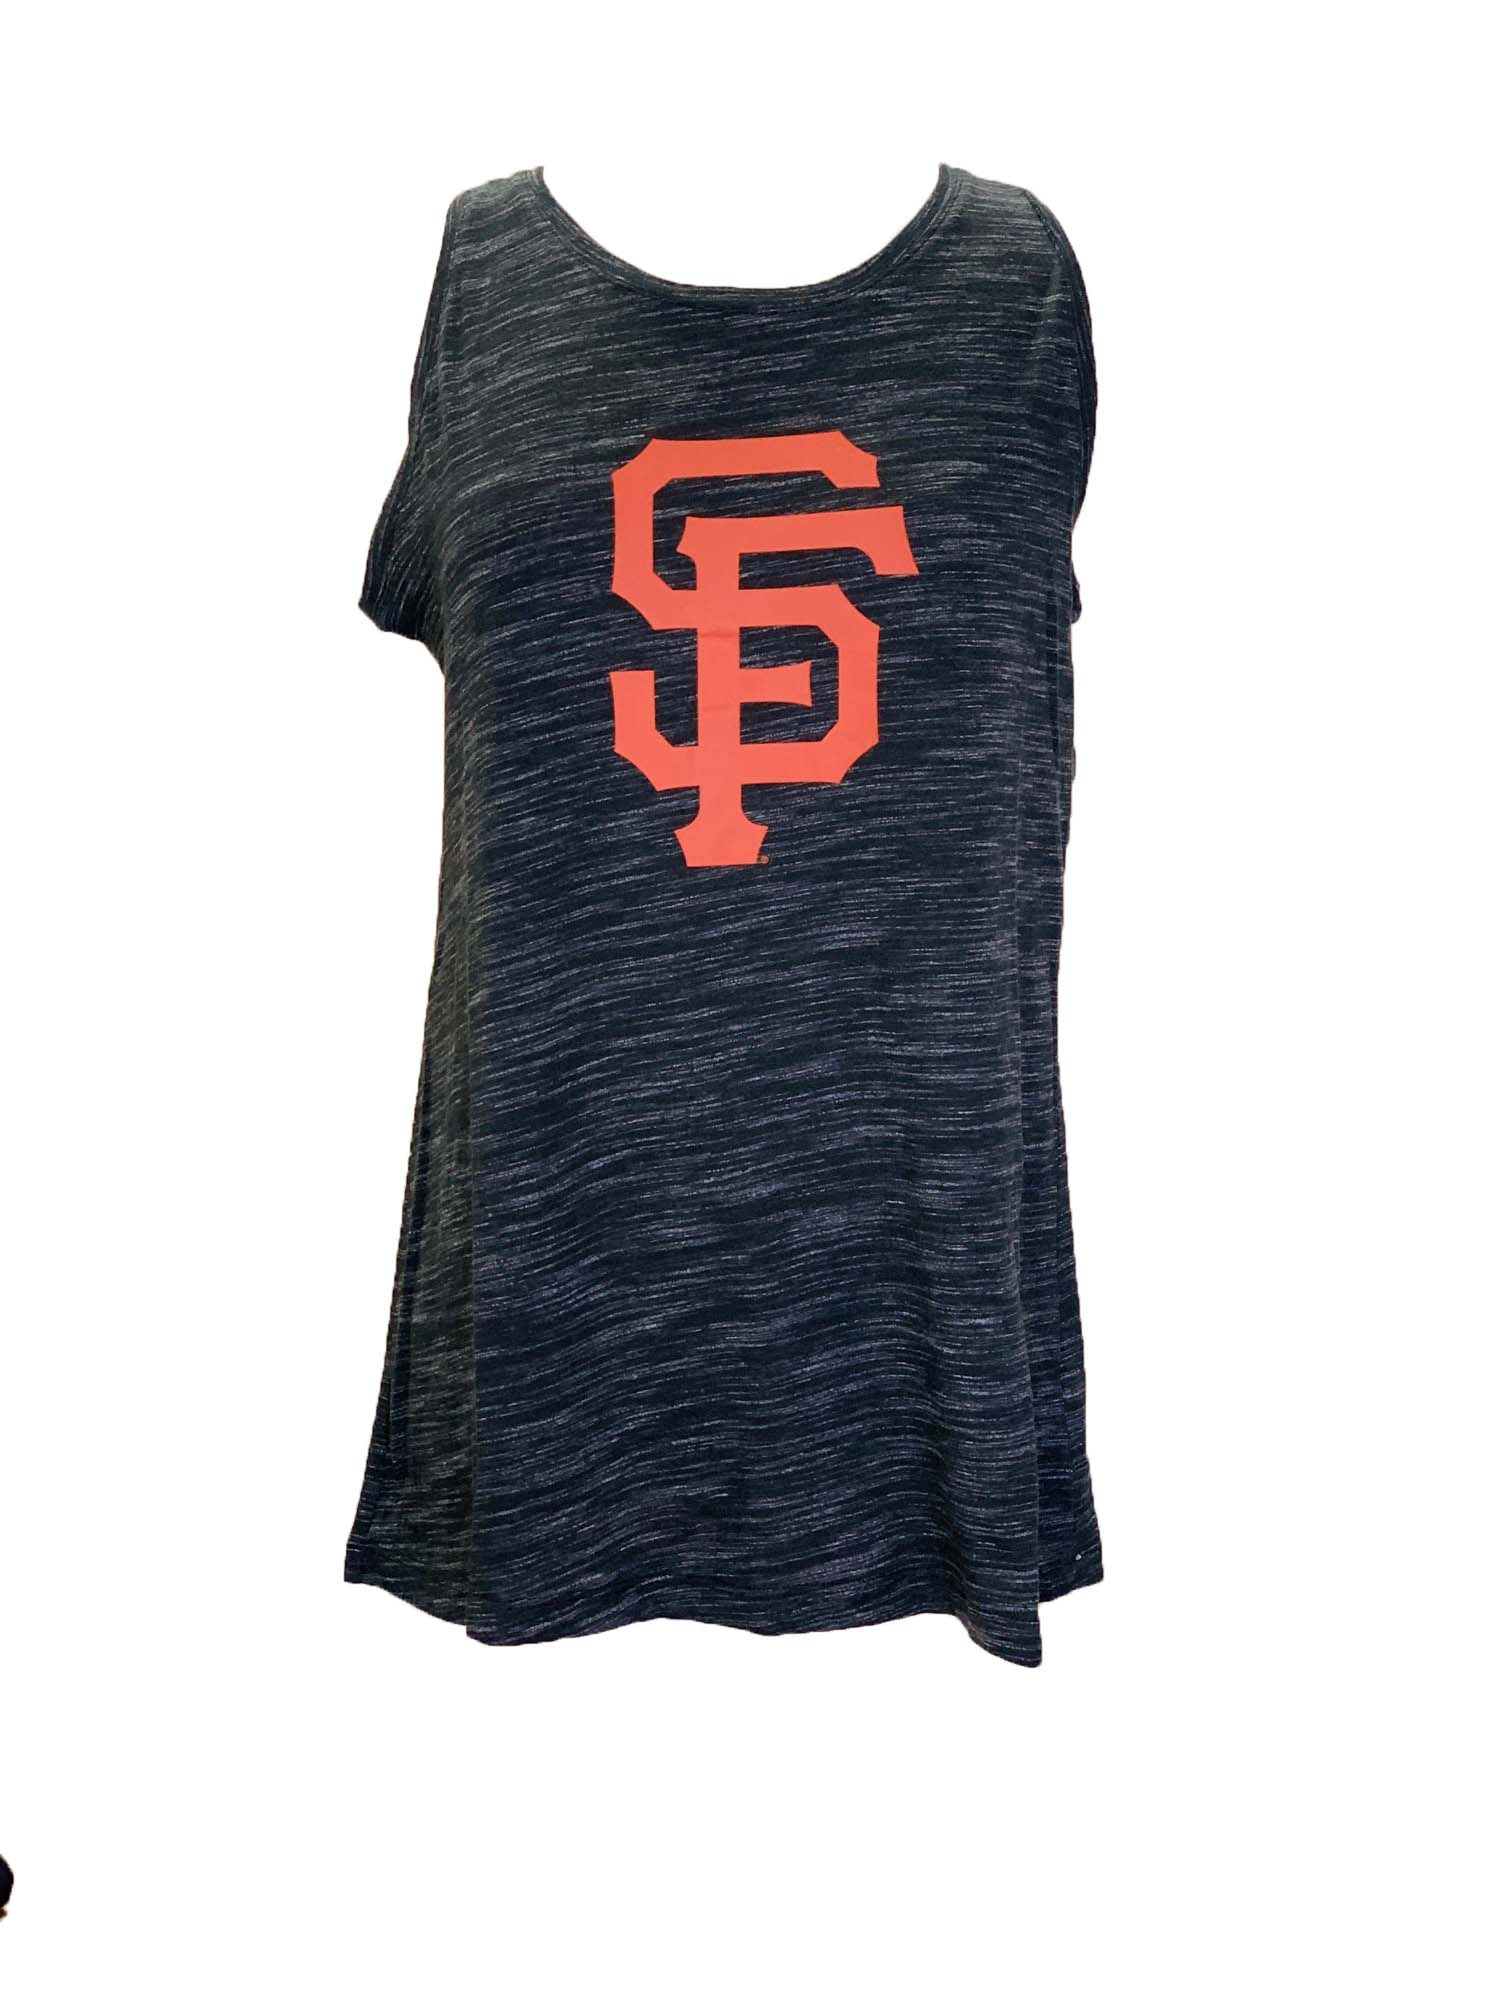 Women's San Francisco Giants New Era Black Tie-Dye Cropped